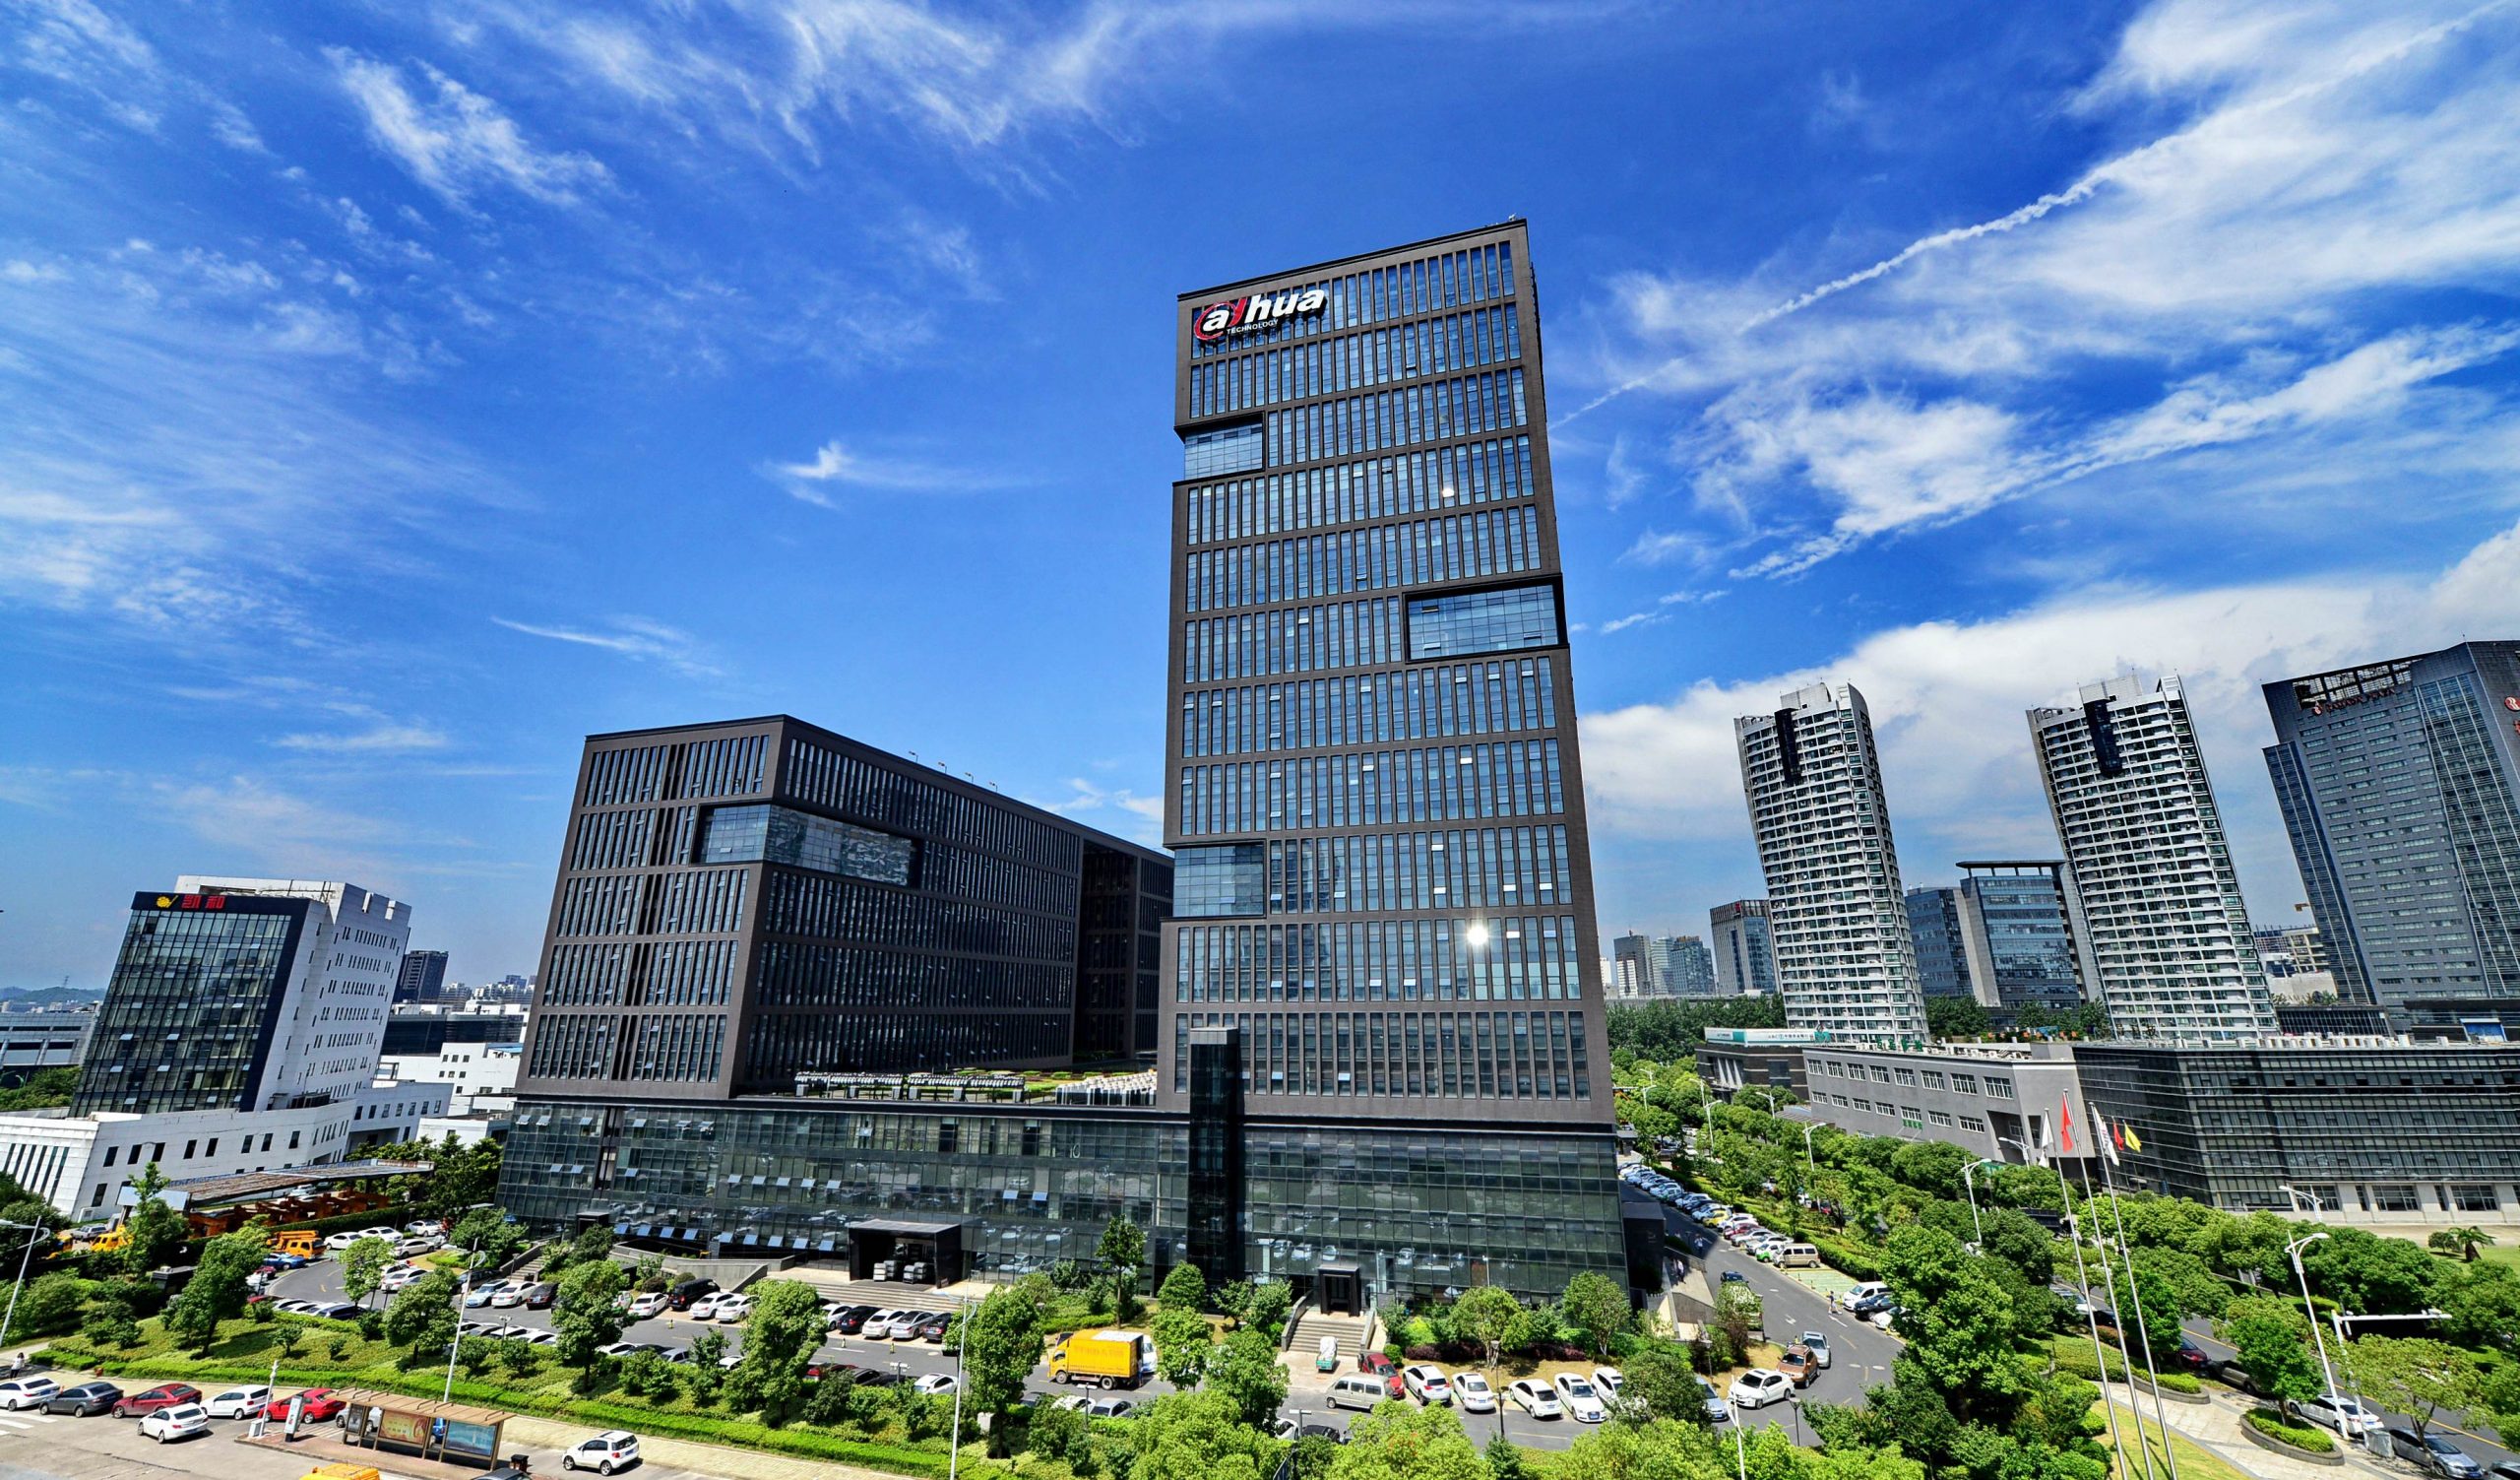 浙江大華技術股份有限公司總部的宏偉外觀。